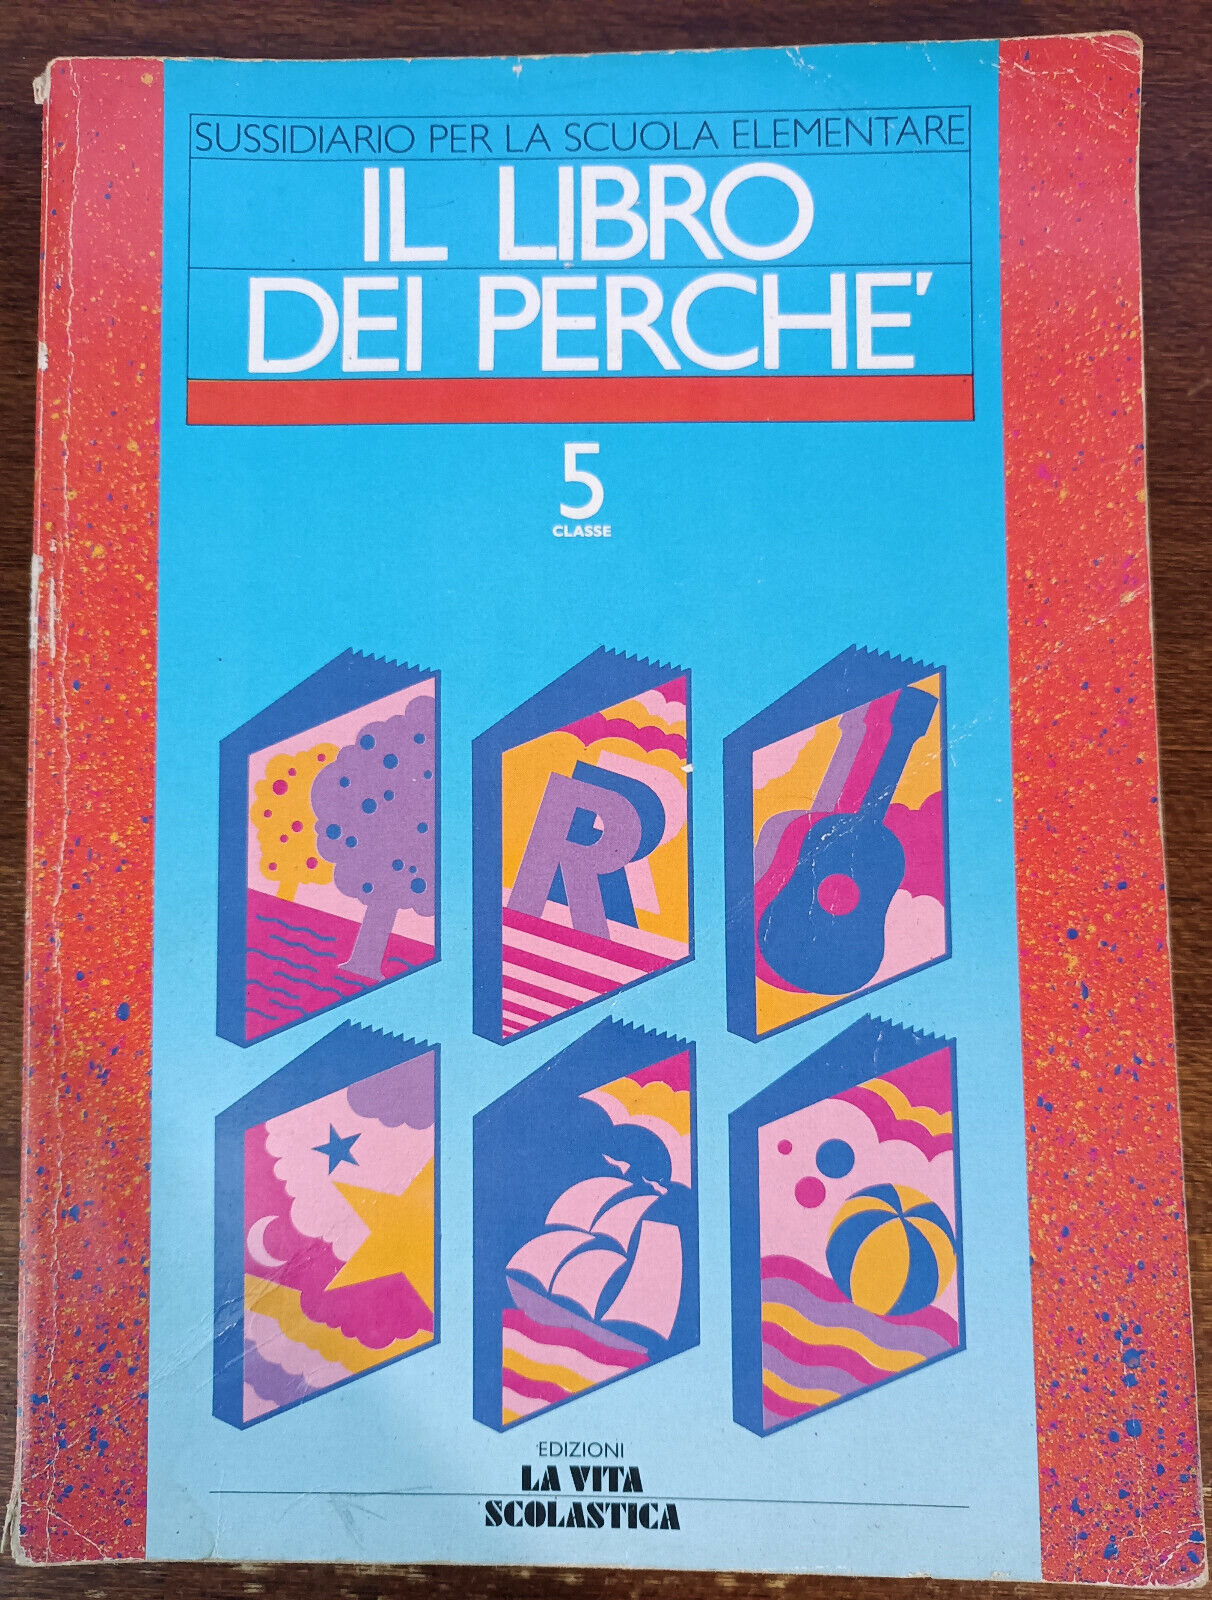 Il libro dei perch? - Giuseppe Lisciani - La vita scolastica, 1988 - A